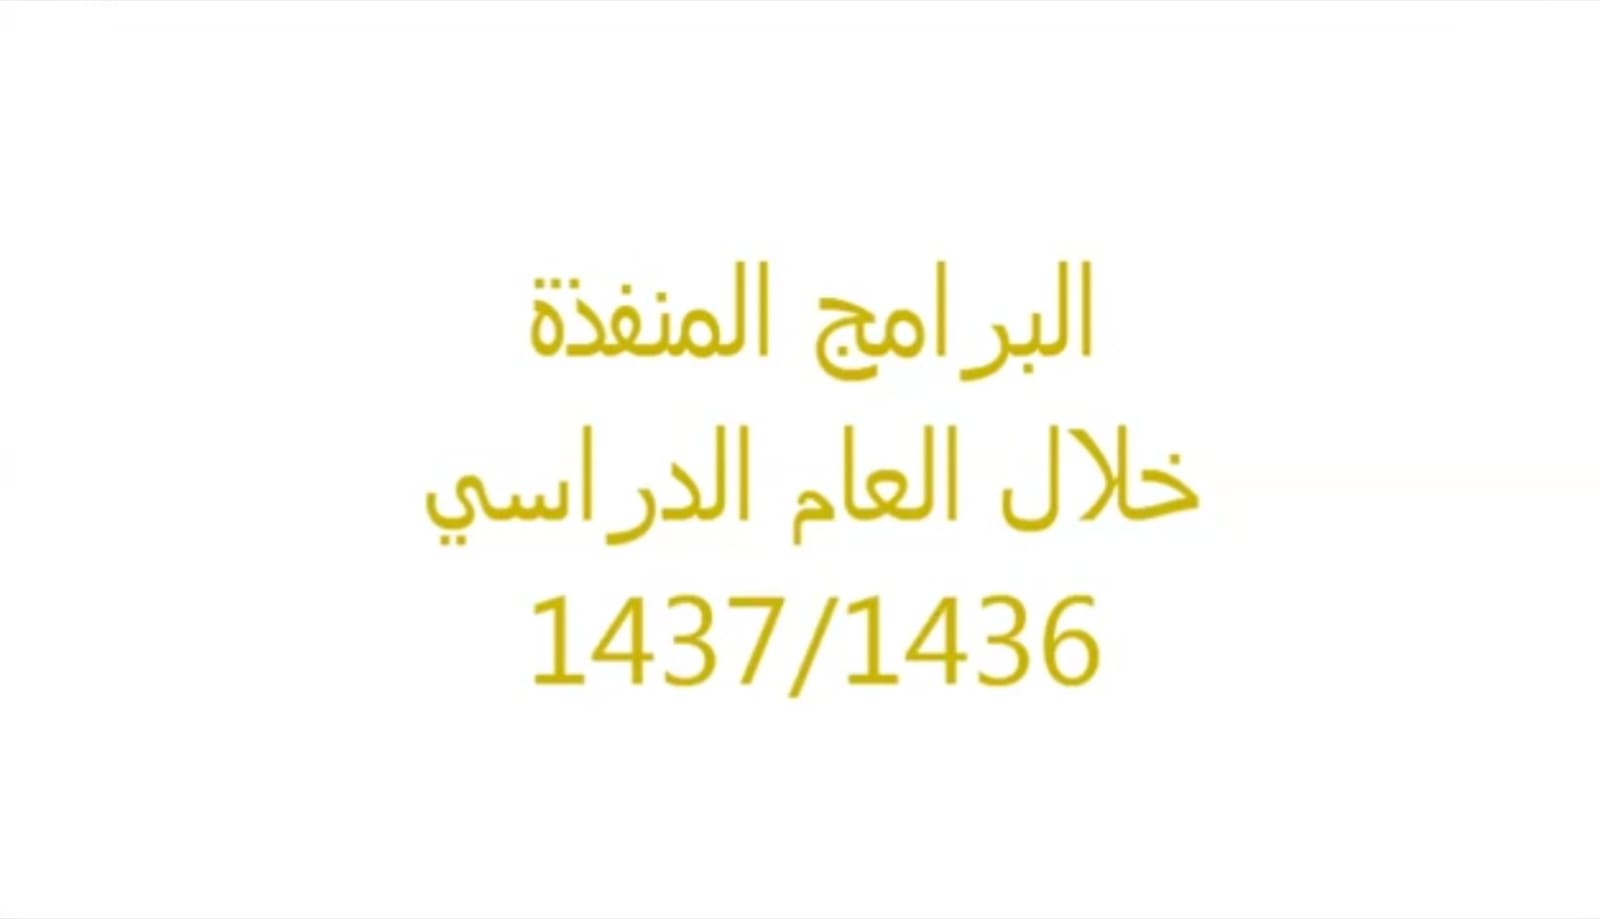 (العربية) برامج وارفة العلم لعام 1437/1436